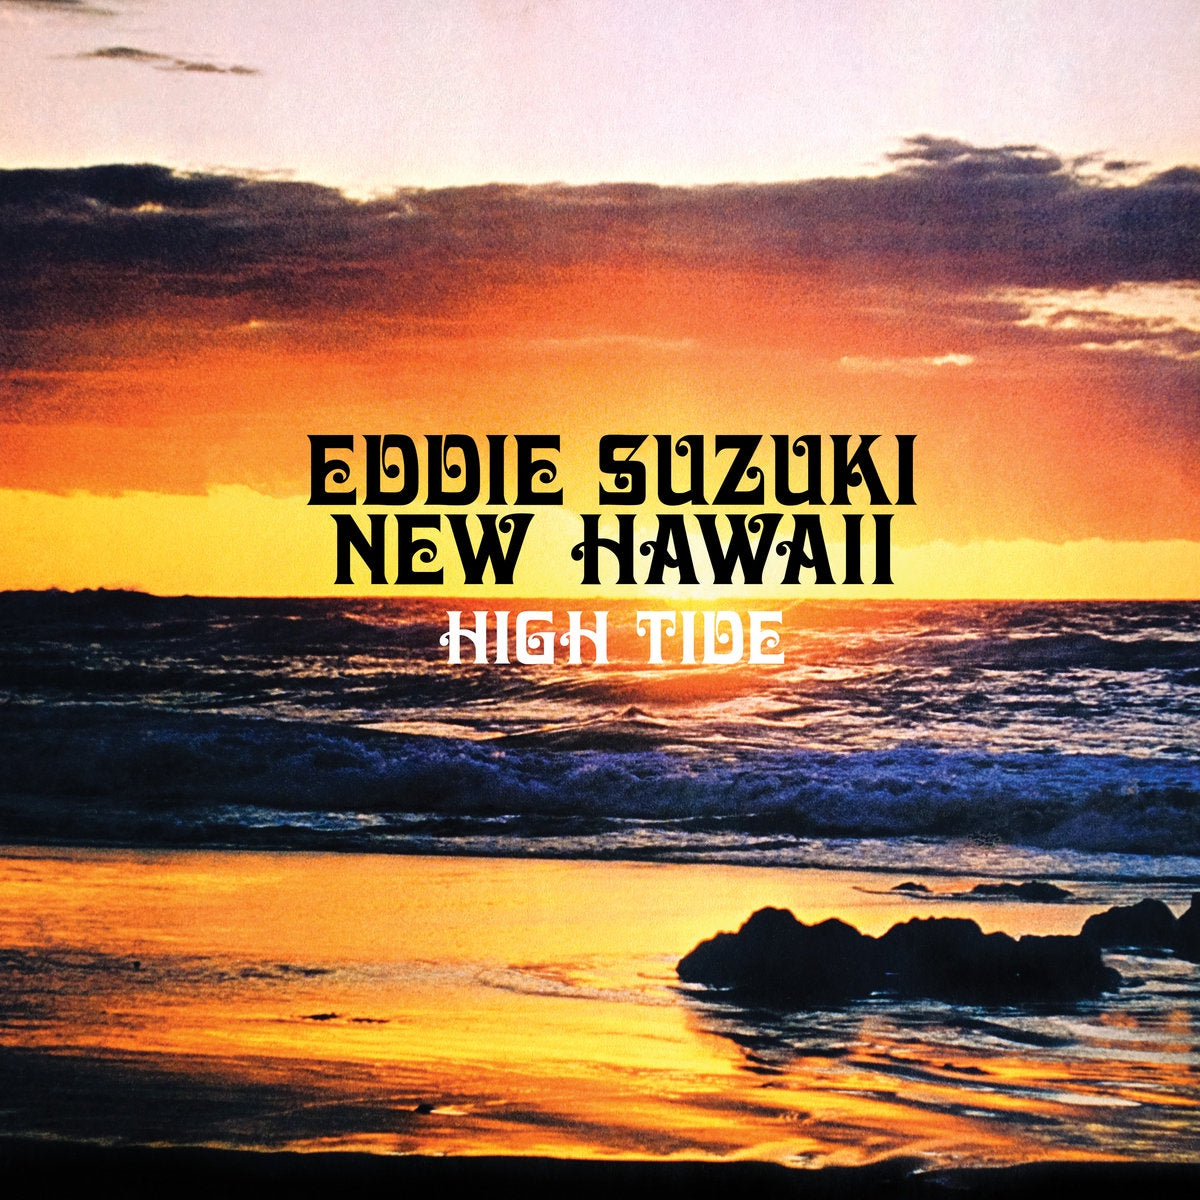 Eddie Suzuki's New Hawaii – High Tide